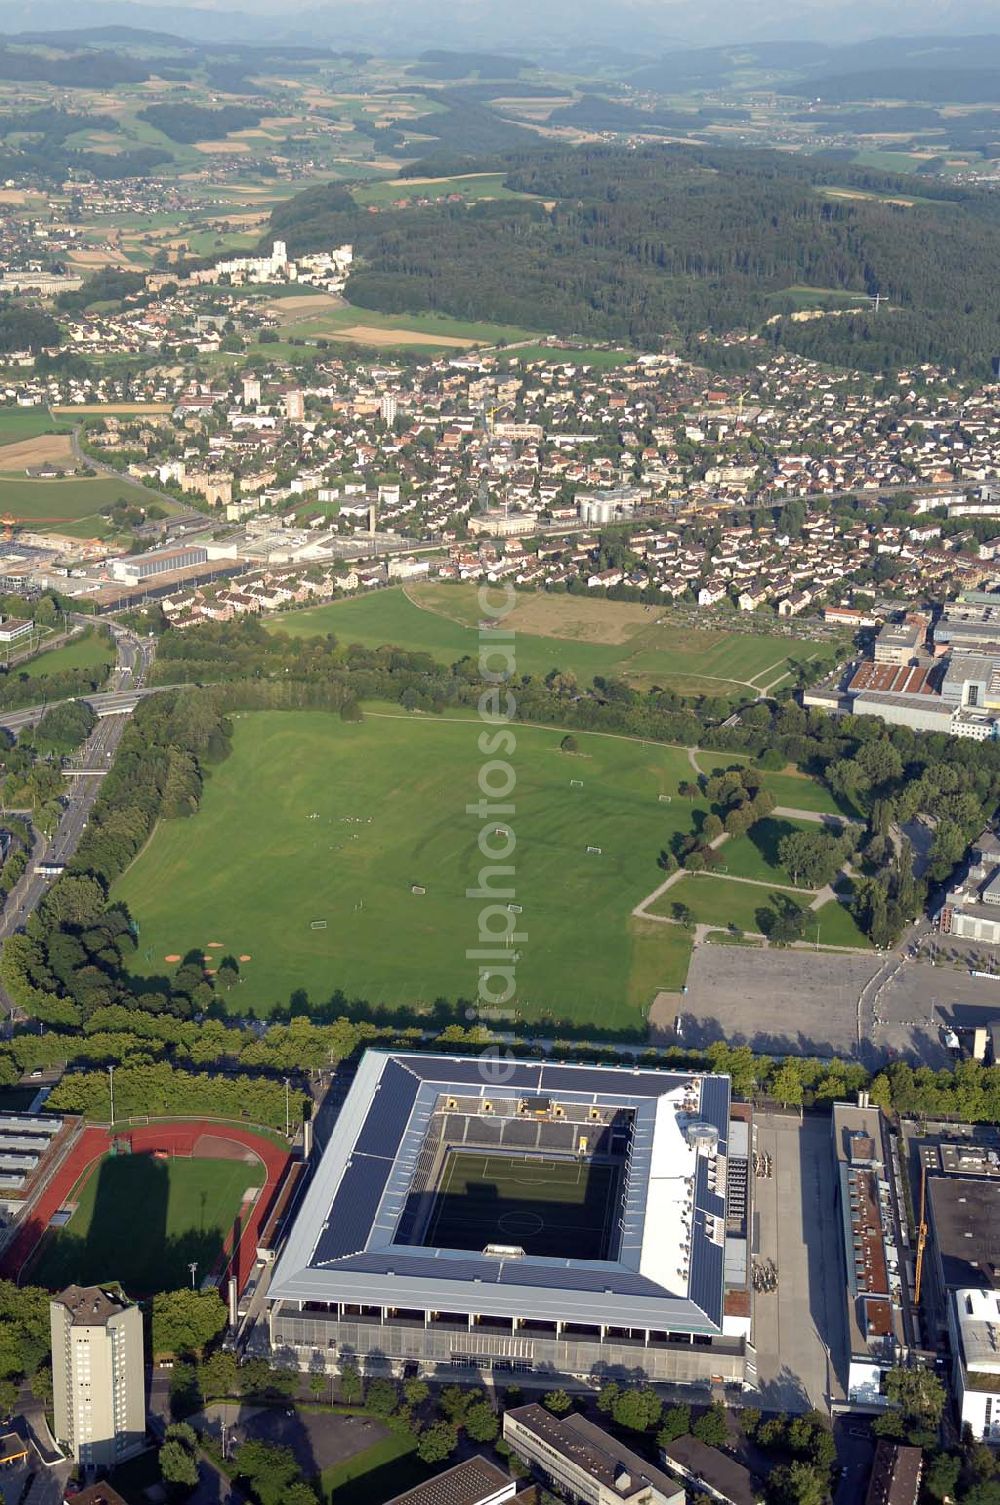 Bern from the bird's eye view: Das Stadion Stade de Suisse Wankdorf Bern steht im Wankdorfquartier der Stadt in der Schweiz. Die Arena ist Heimstatt des Berner Fussballvereins BSC Young Boys (YB) und wurde durch die Baufirma Marazzi Generalunternehmung ( heute Losinger Construction AG) und die Baltensperger AG errichtet.